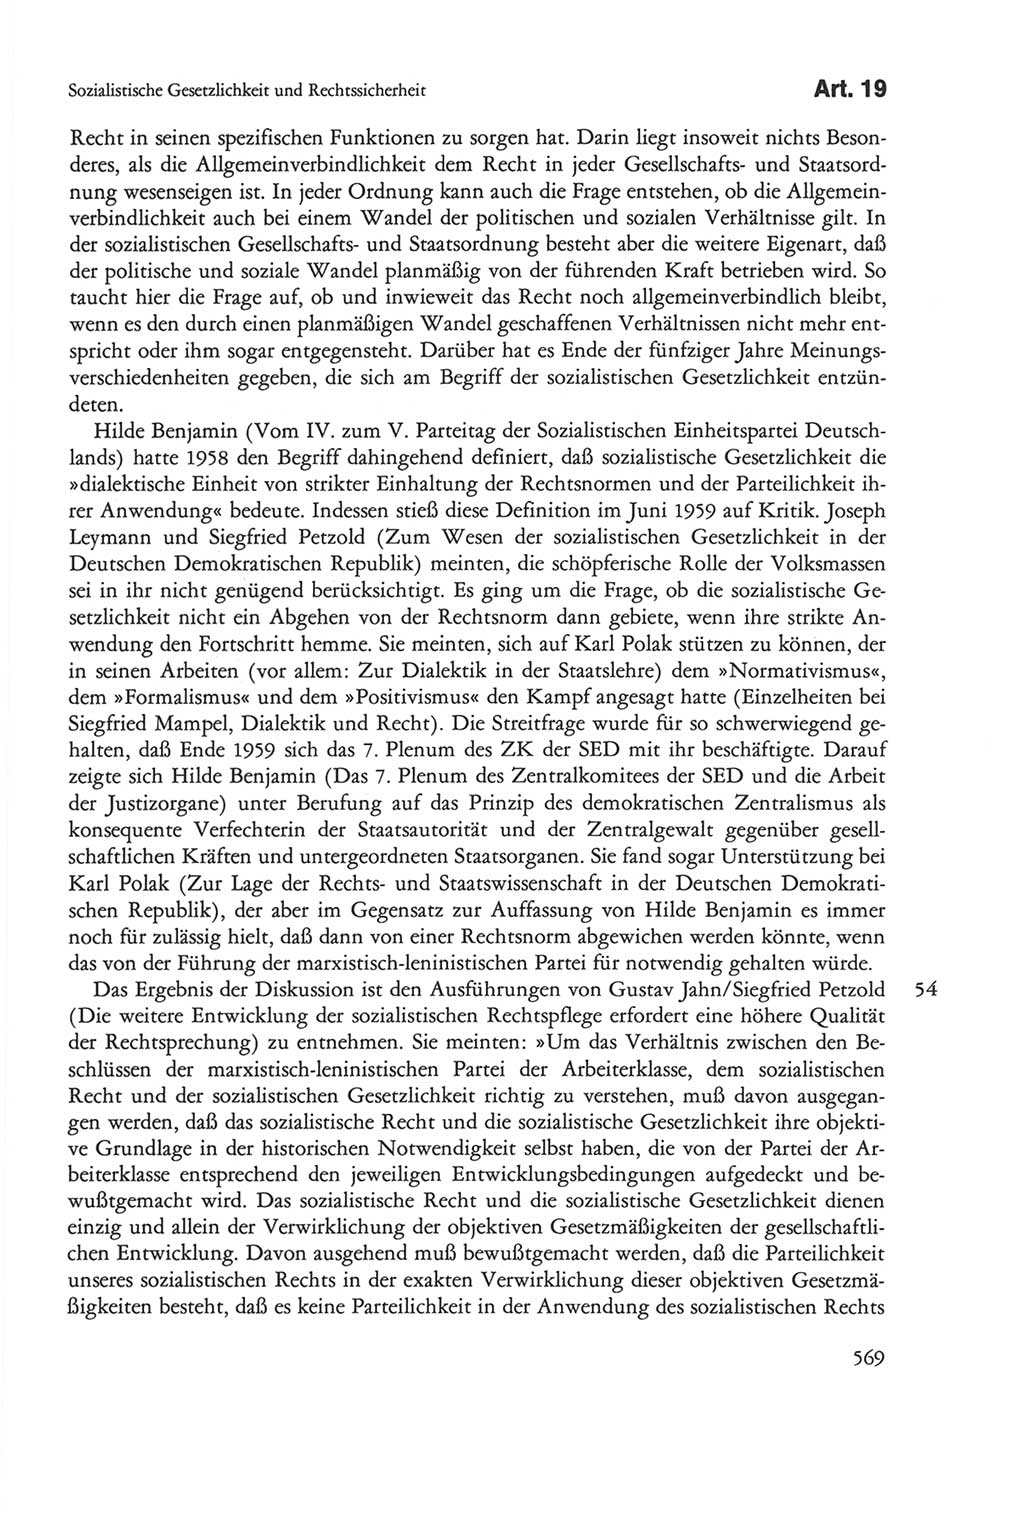 Die sozialistische Verfassung der Deutschen Demokratischen Republik (DDR), Kommentar mit einem Nachtrag 1997, Seite 569 (Soz. Verf. DDR Komm. Nachtr. 1997, S. 569)